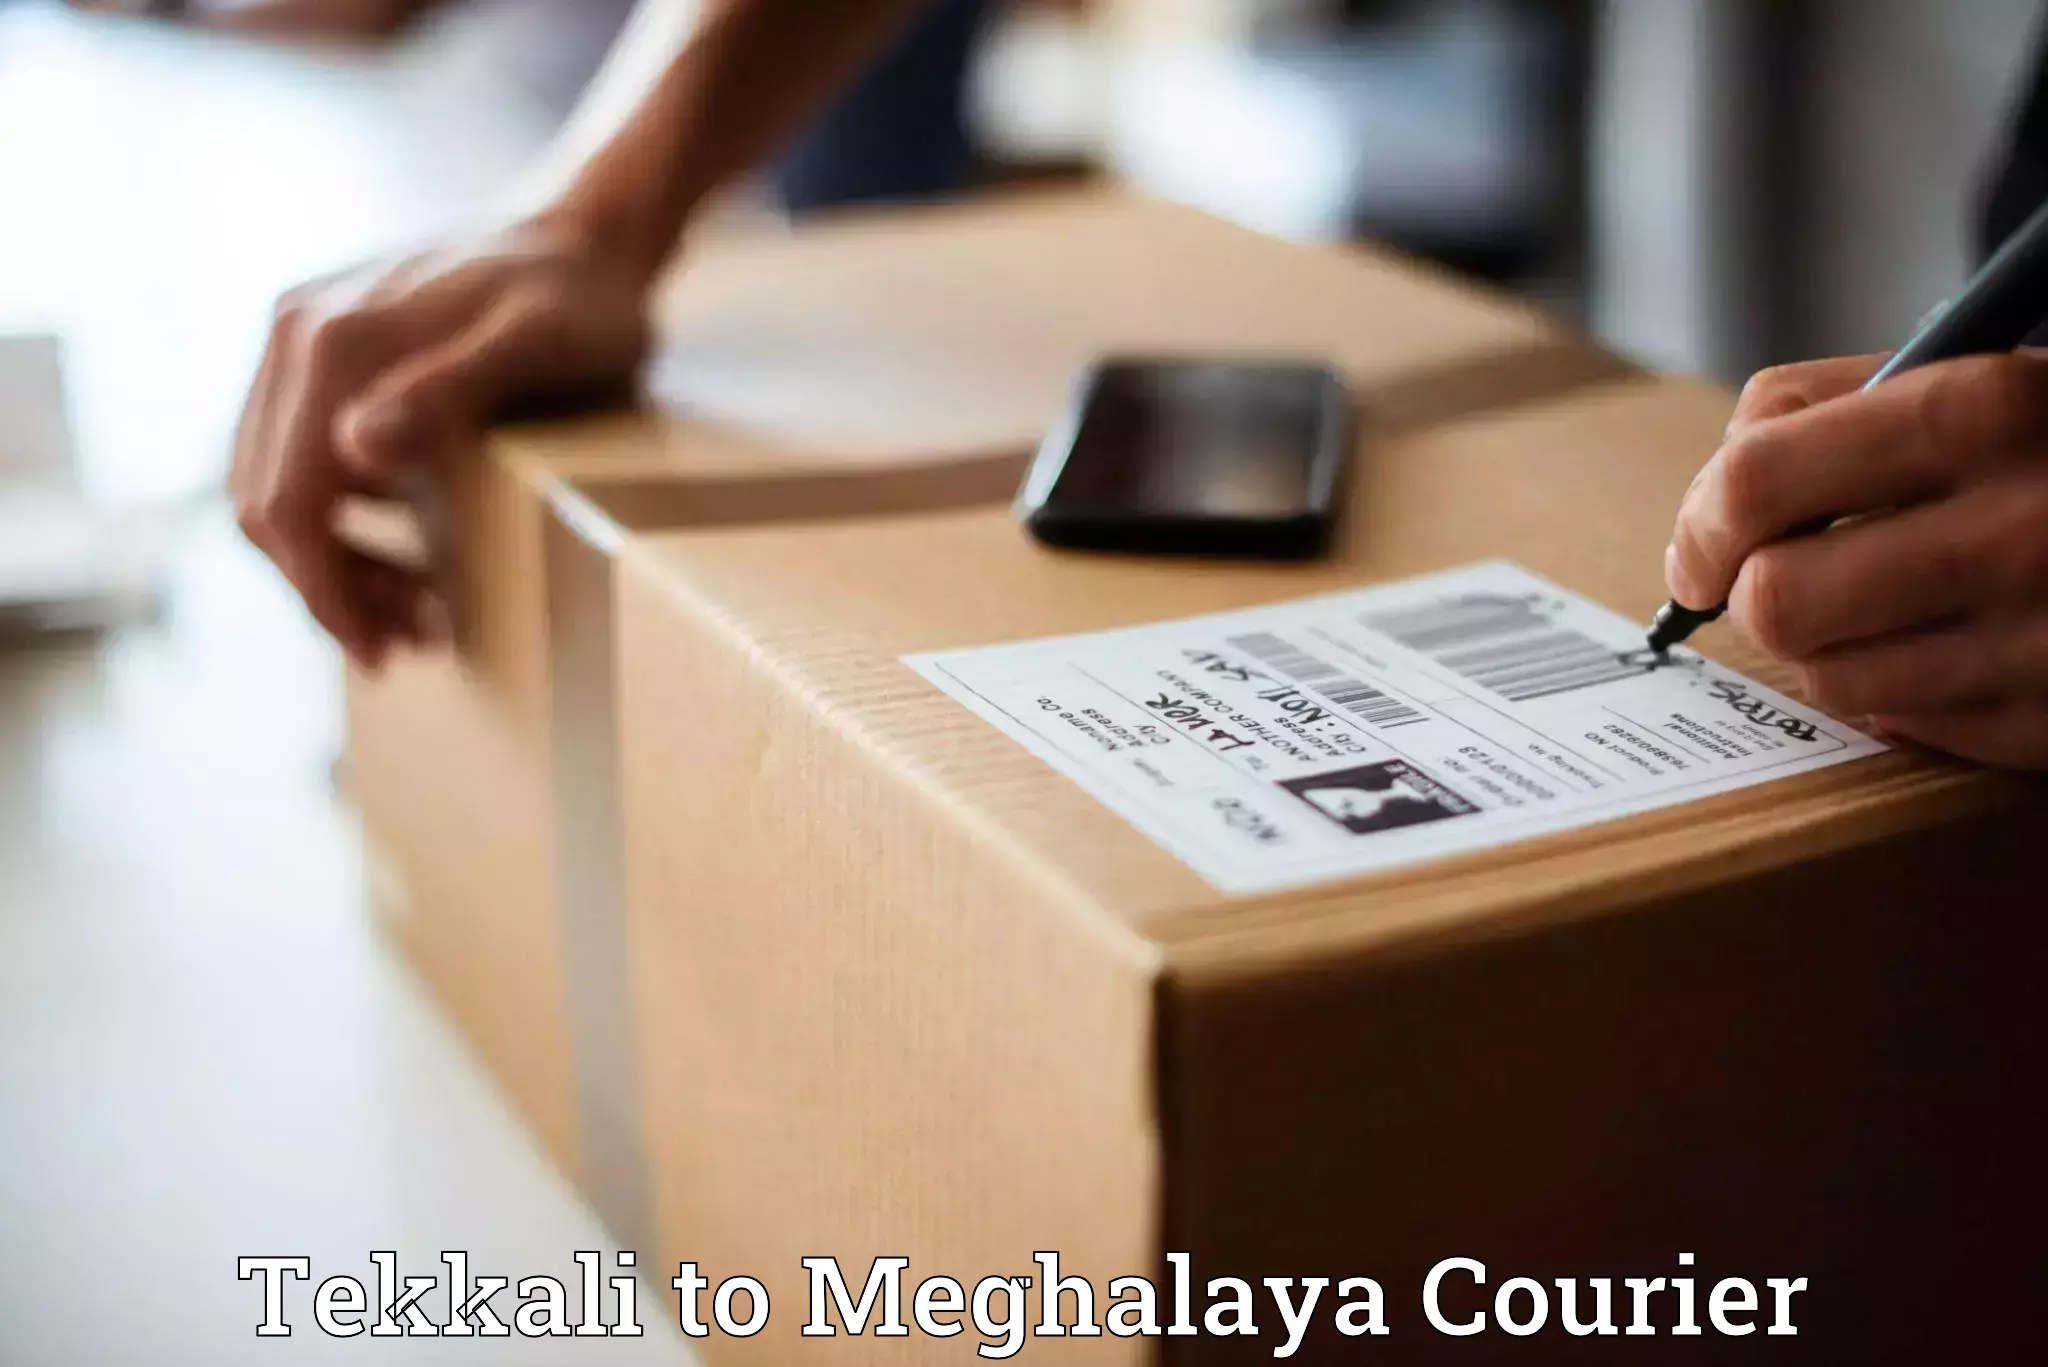 Express logistics providers Tekkali to Marshillong